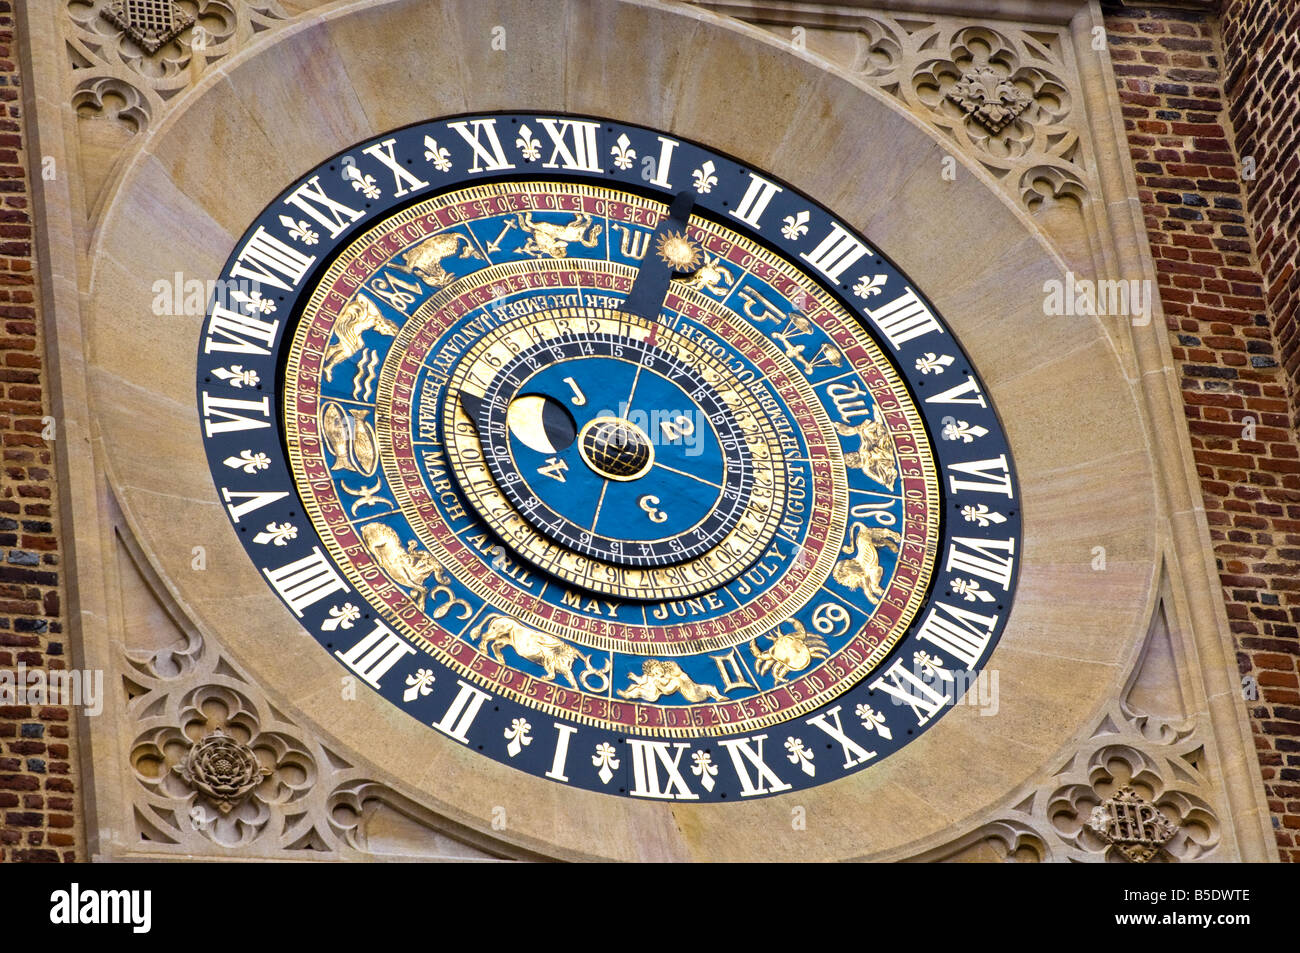 La célèbre horloge astronomique médiévale tardive sur Anne Boleyn's Gatehouse à Hampton Court Palace Banque D'Images